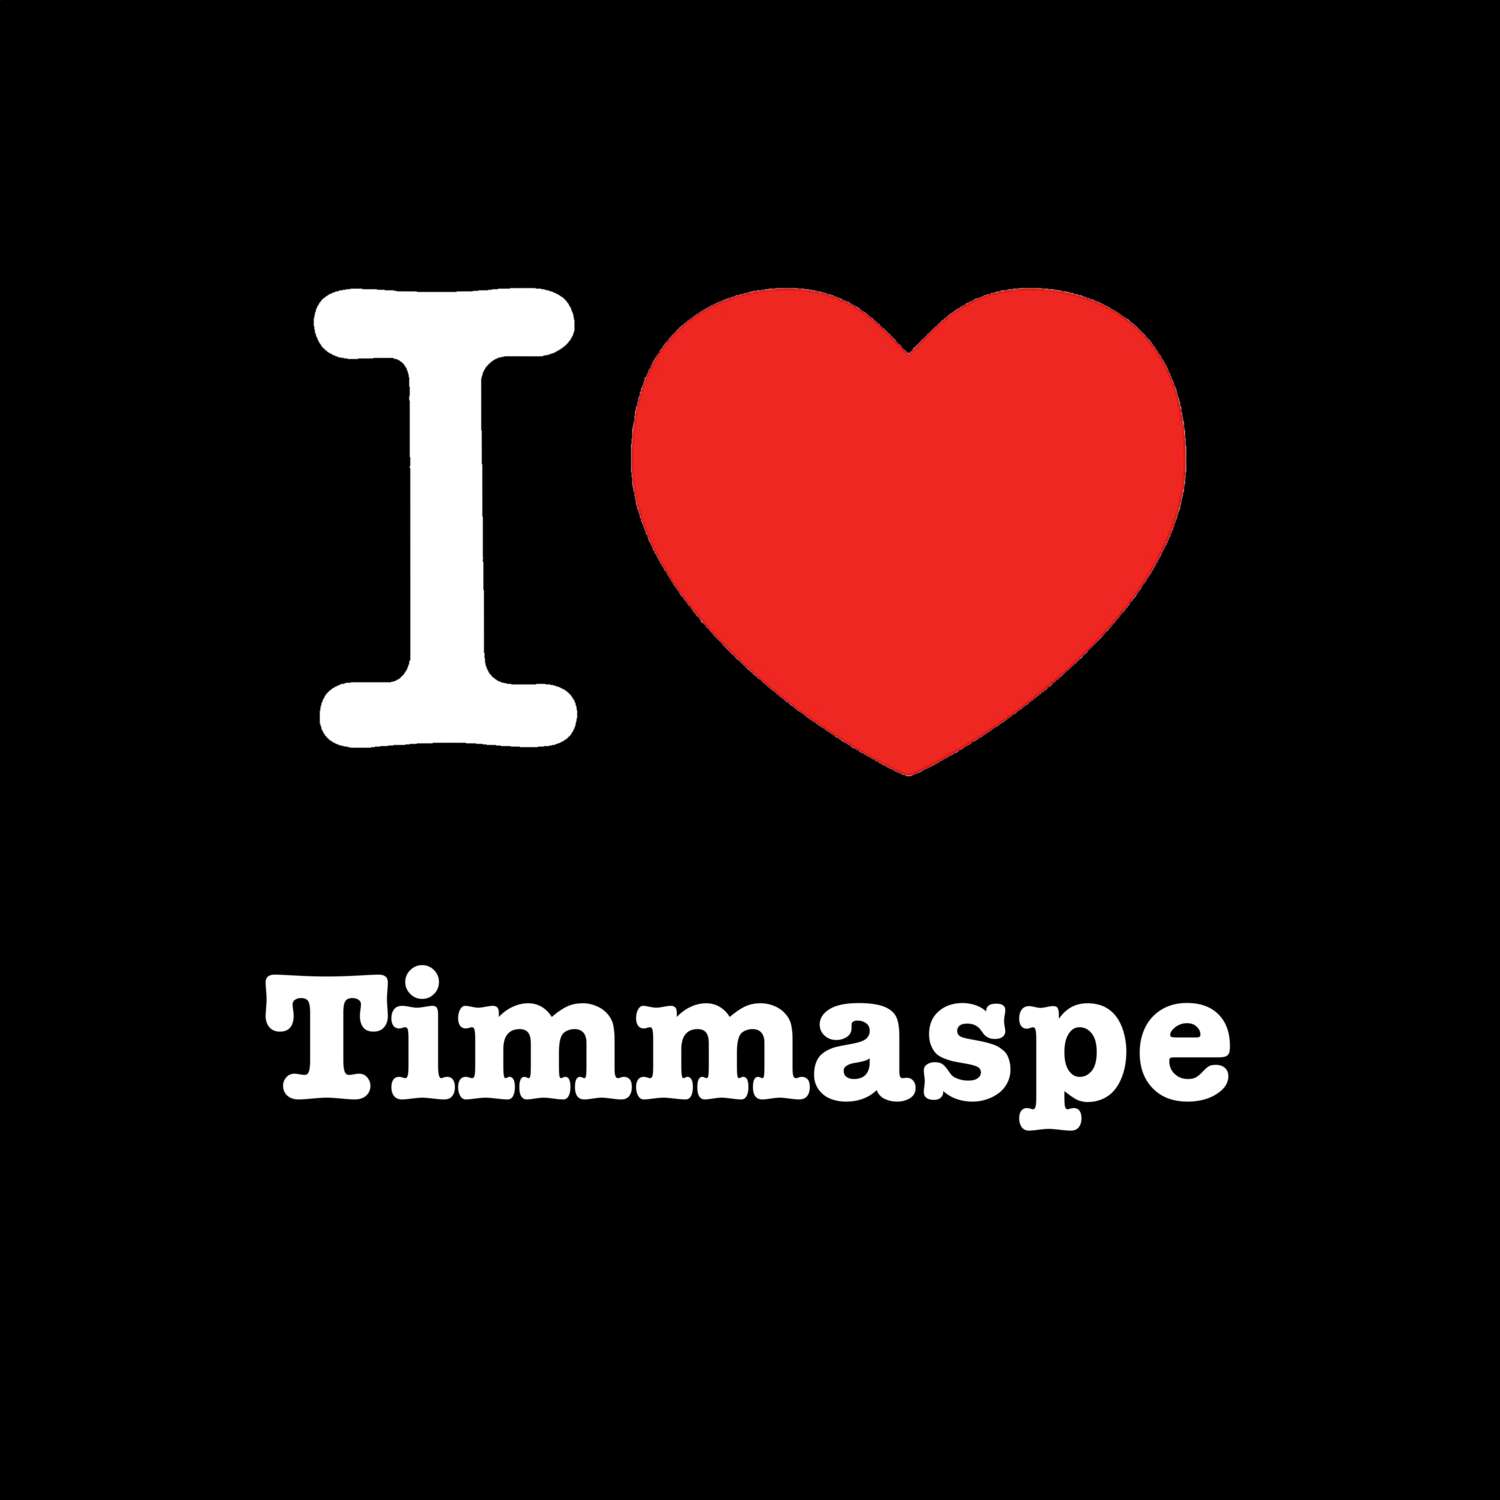 Timmaspe T-Shirt »I love«